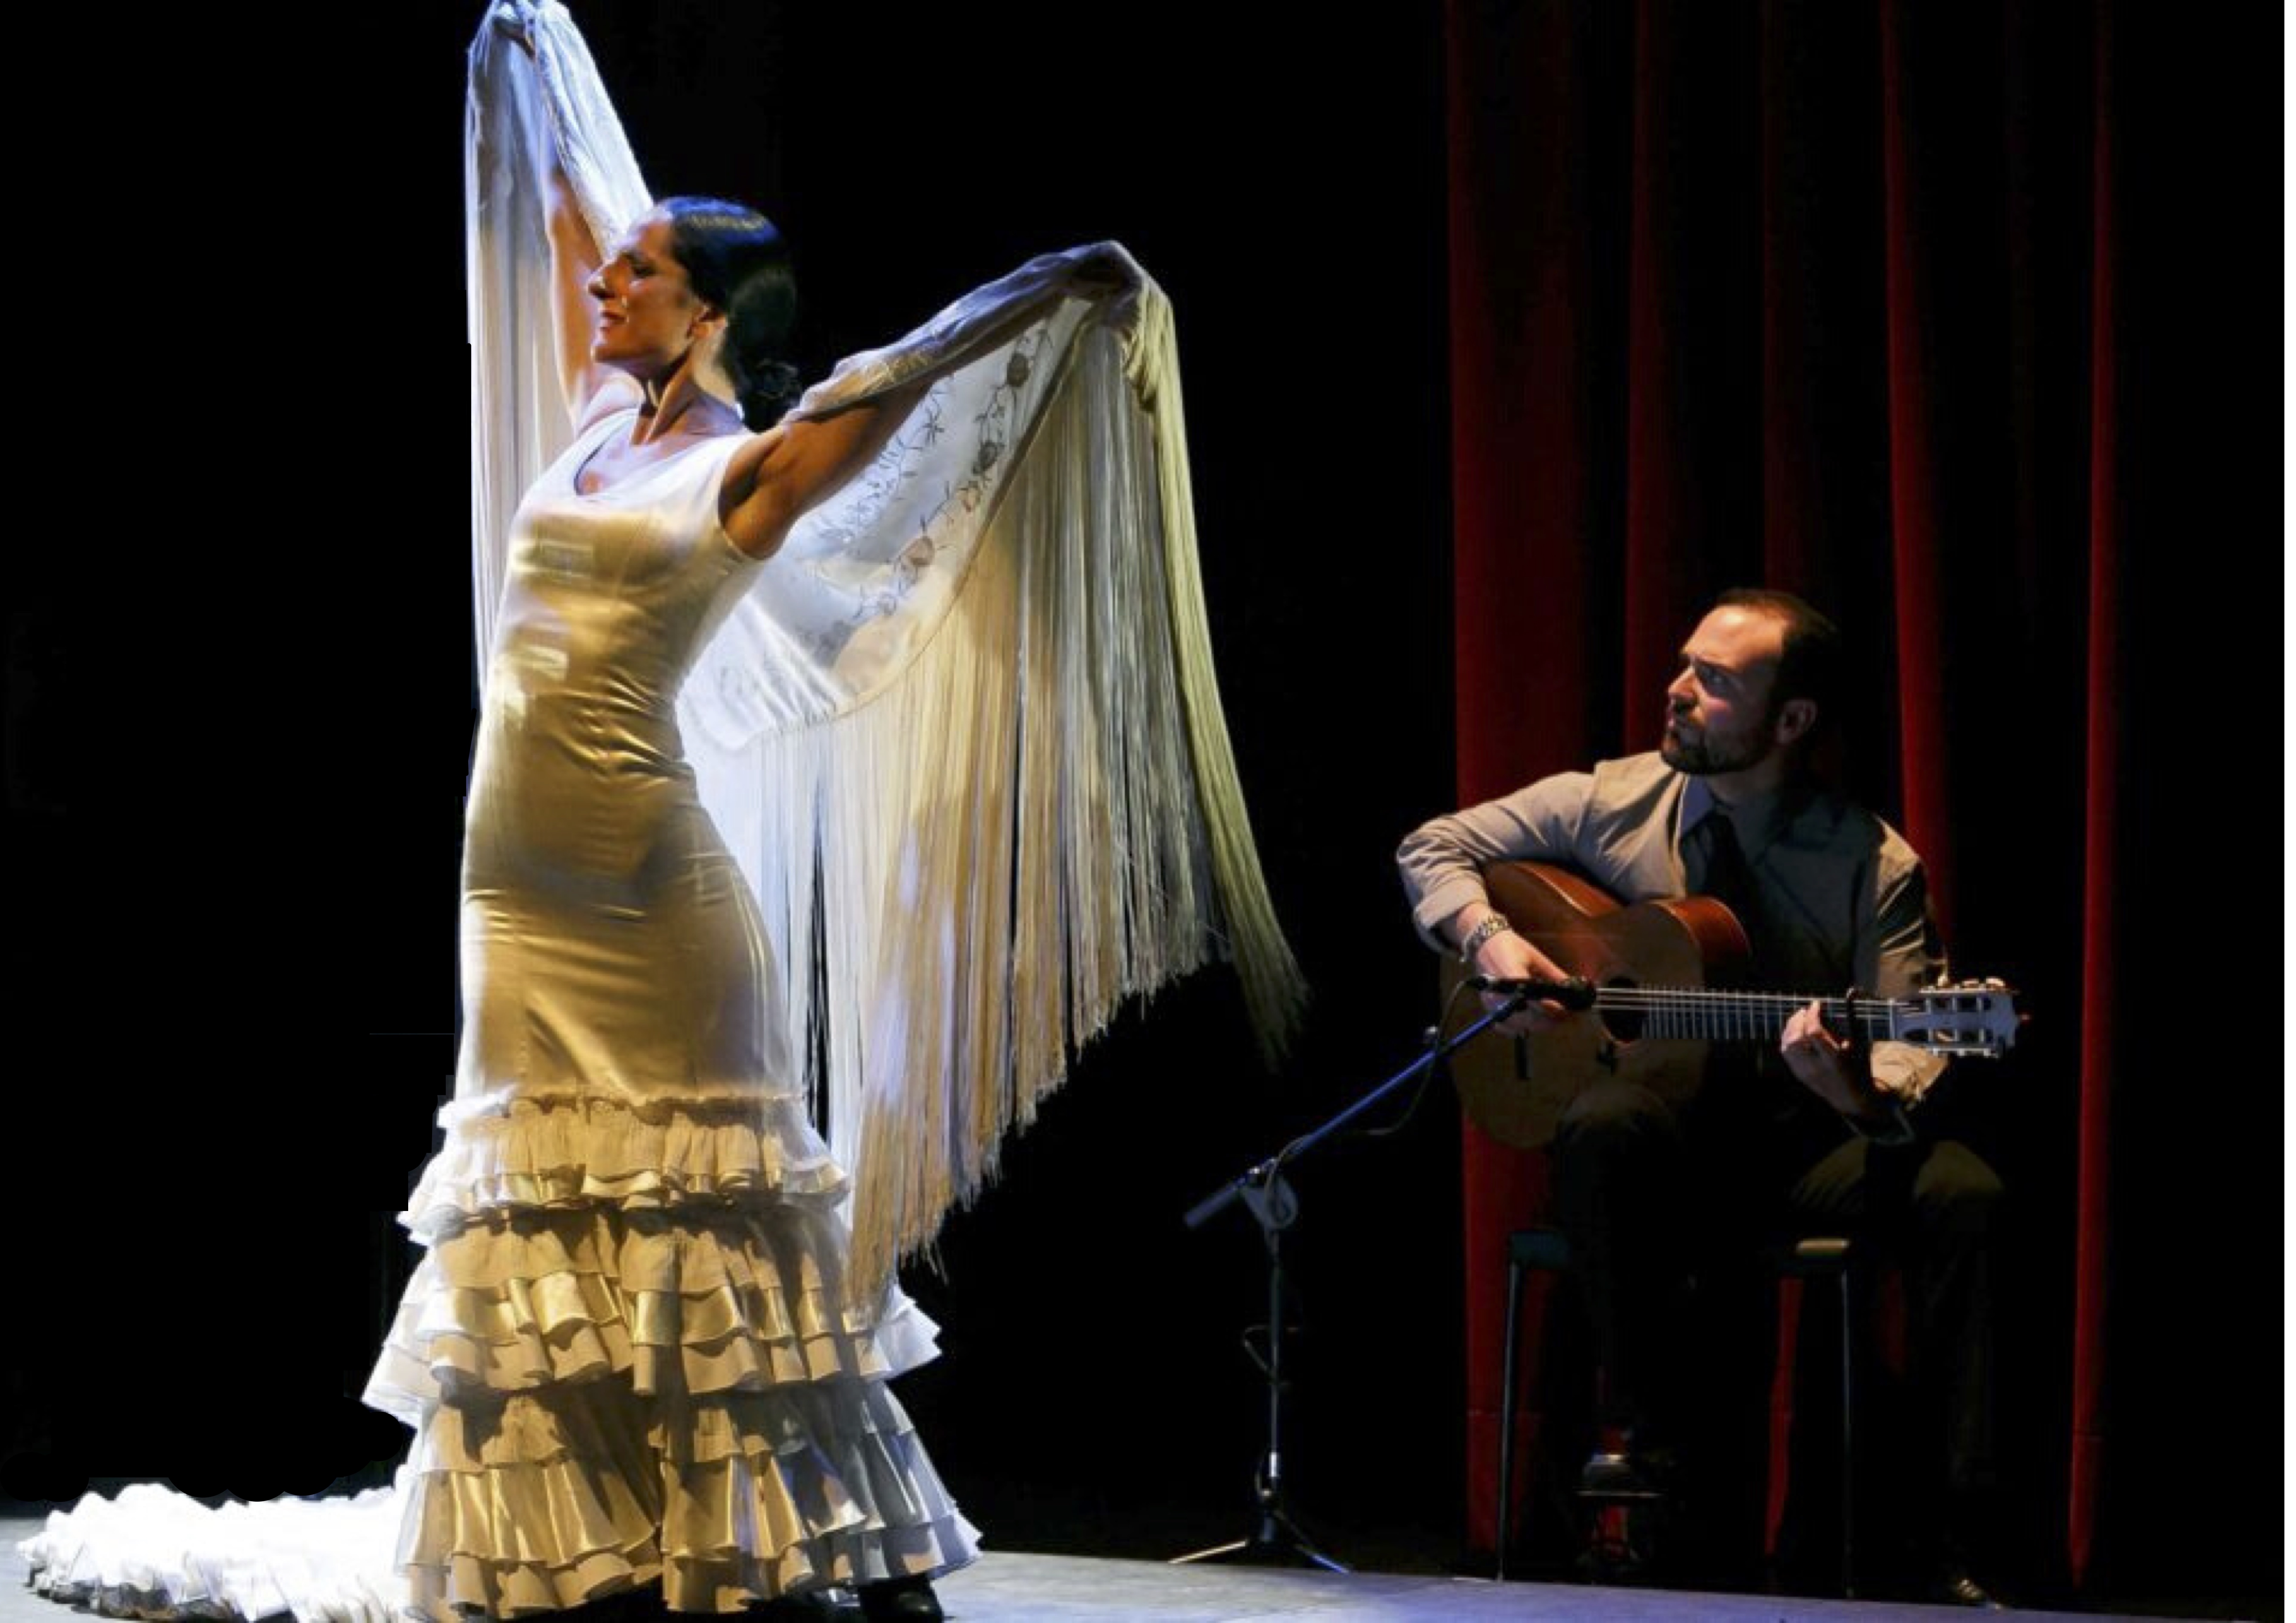 Flamenco dancer performing 